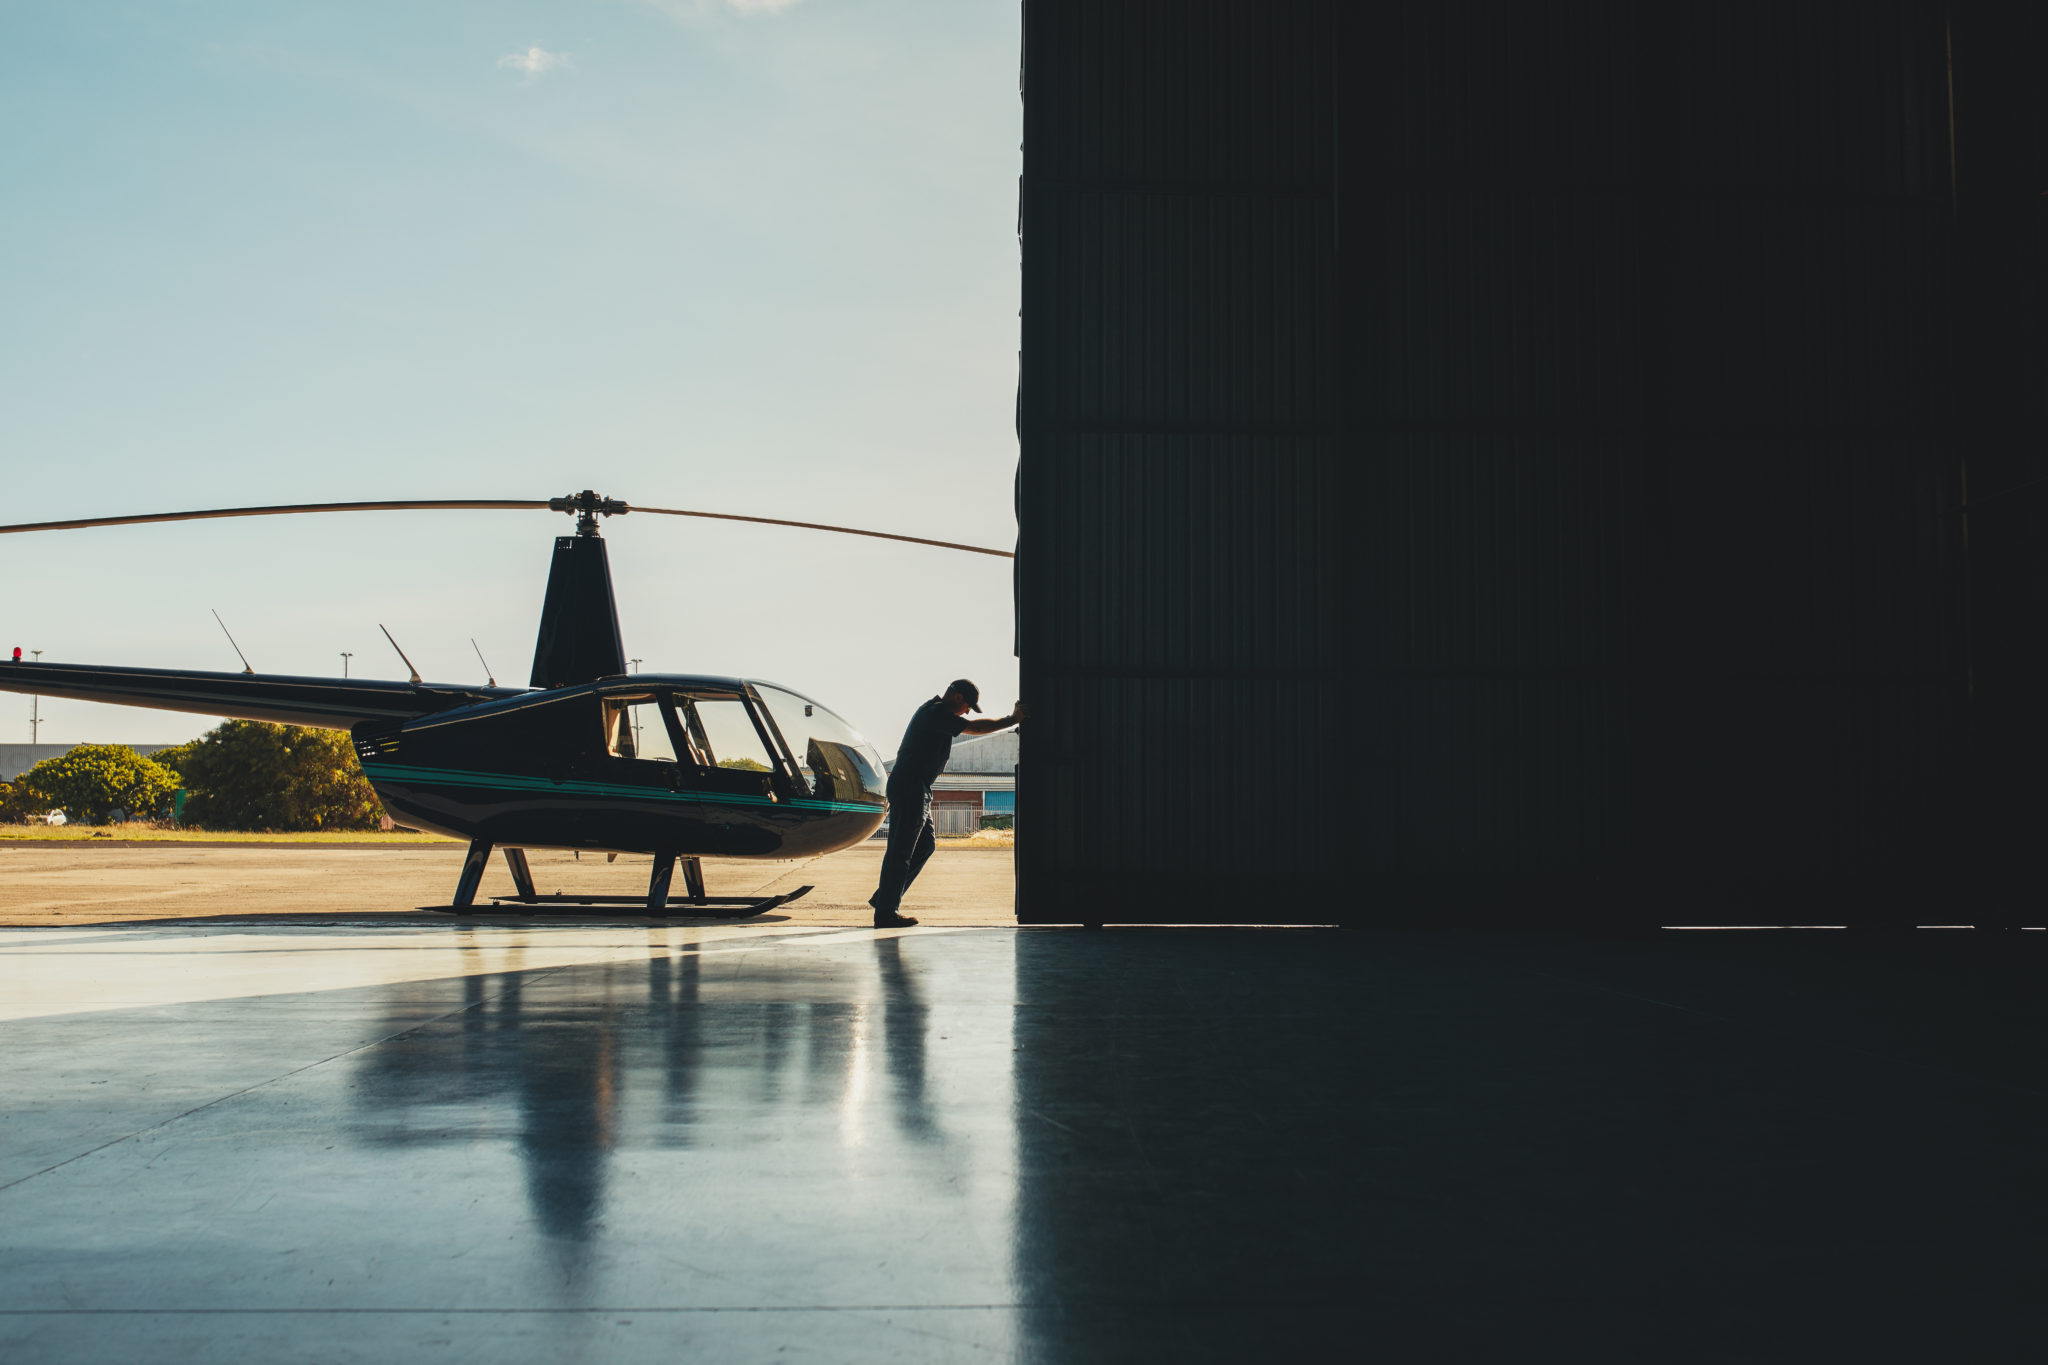 Pilot opening the helicopter hangar door